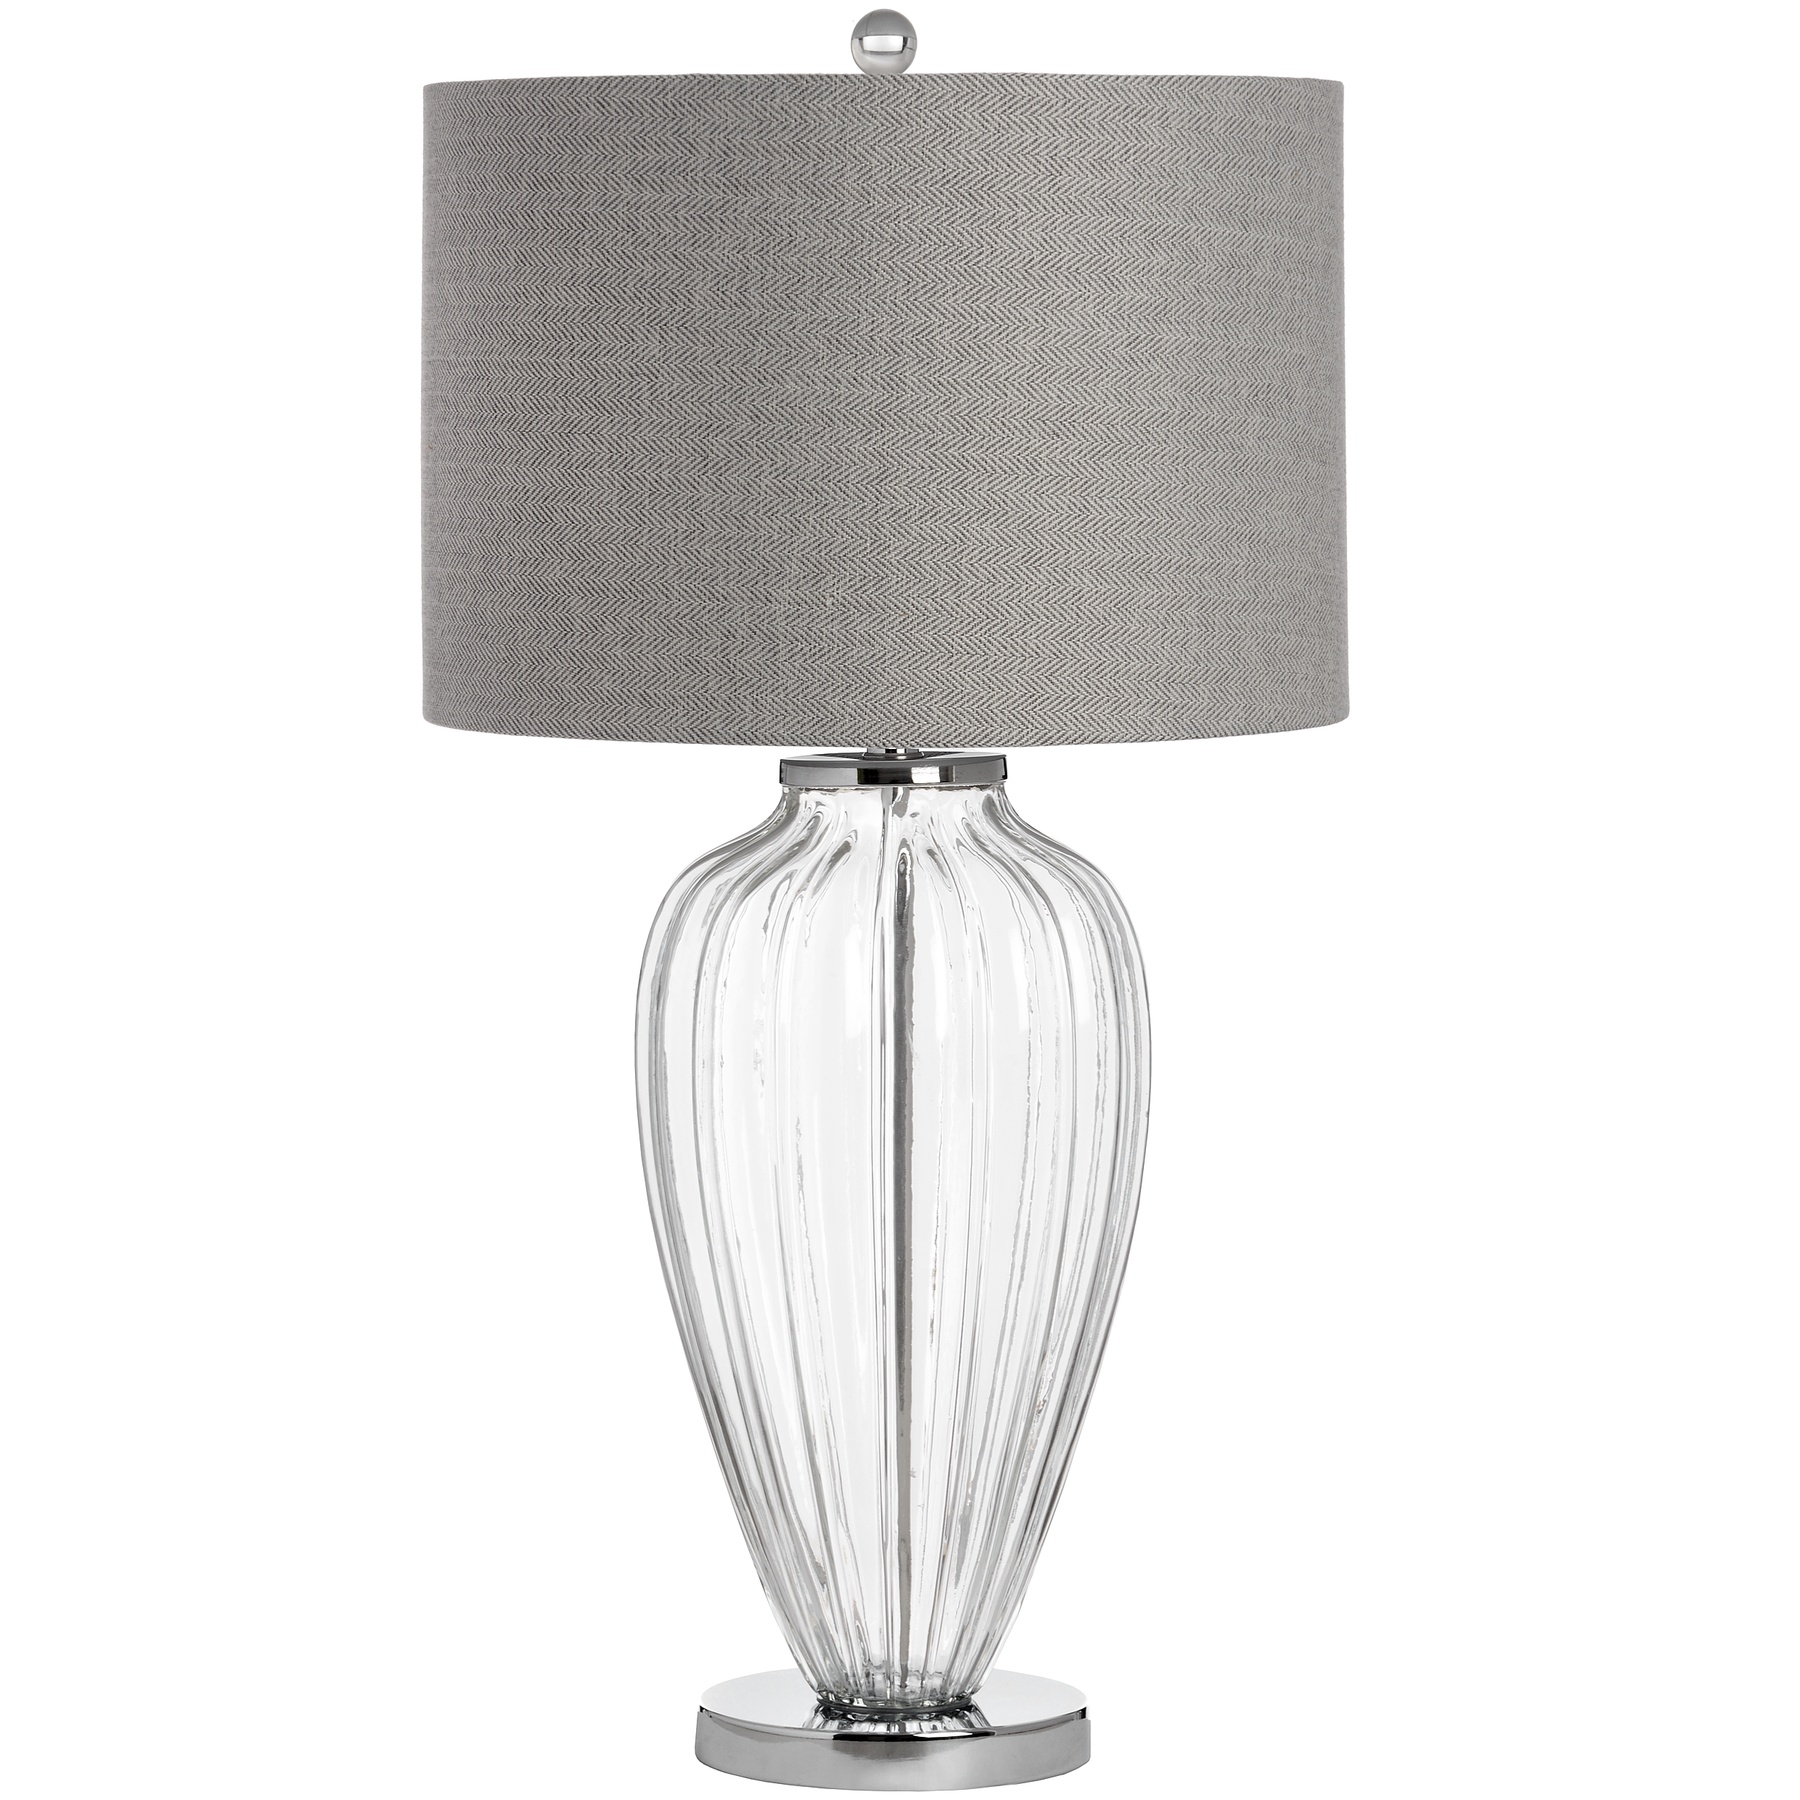 Bologna Glass Table Lamp - Image 1